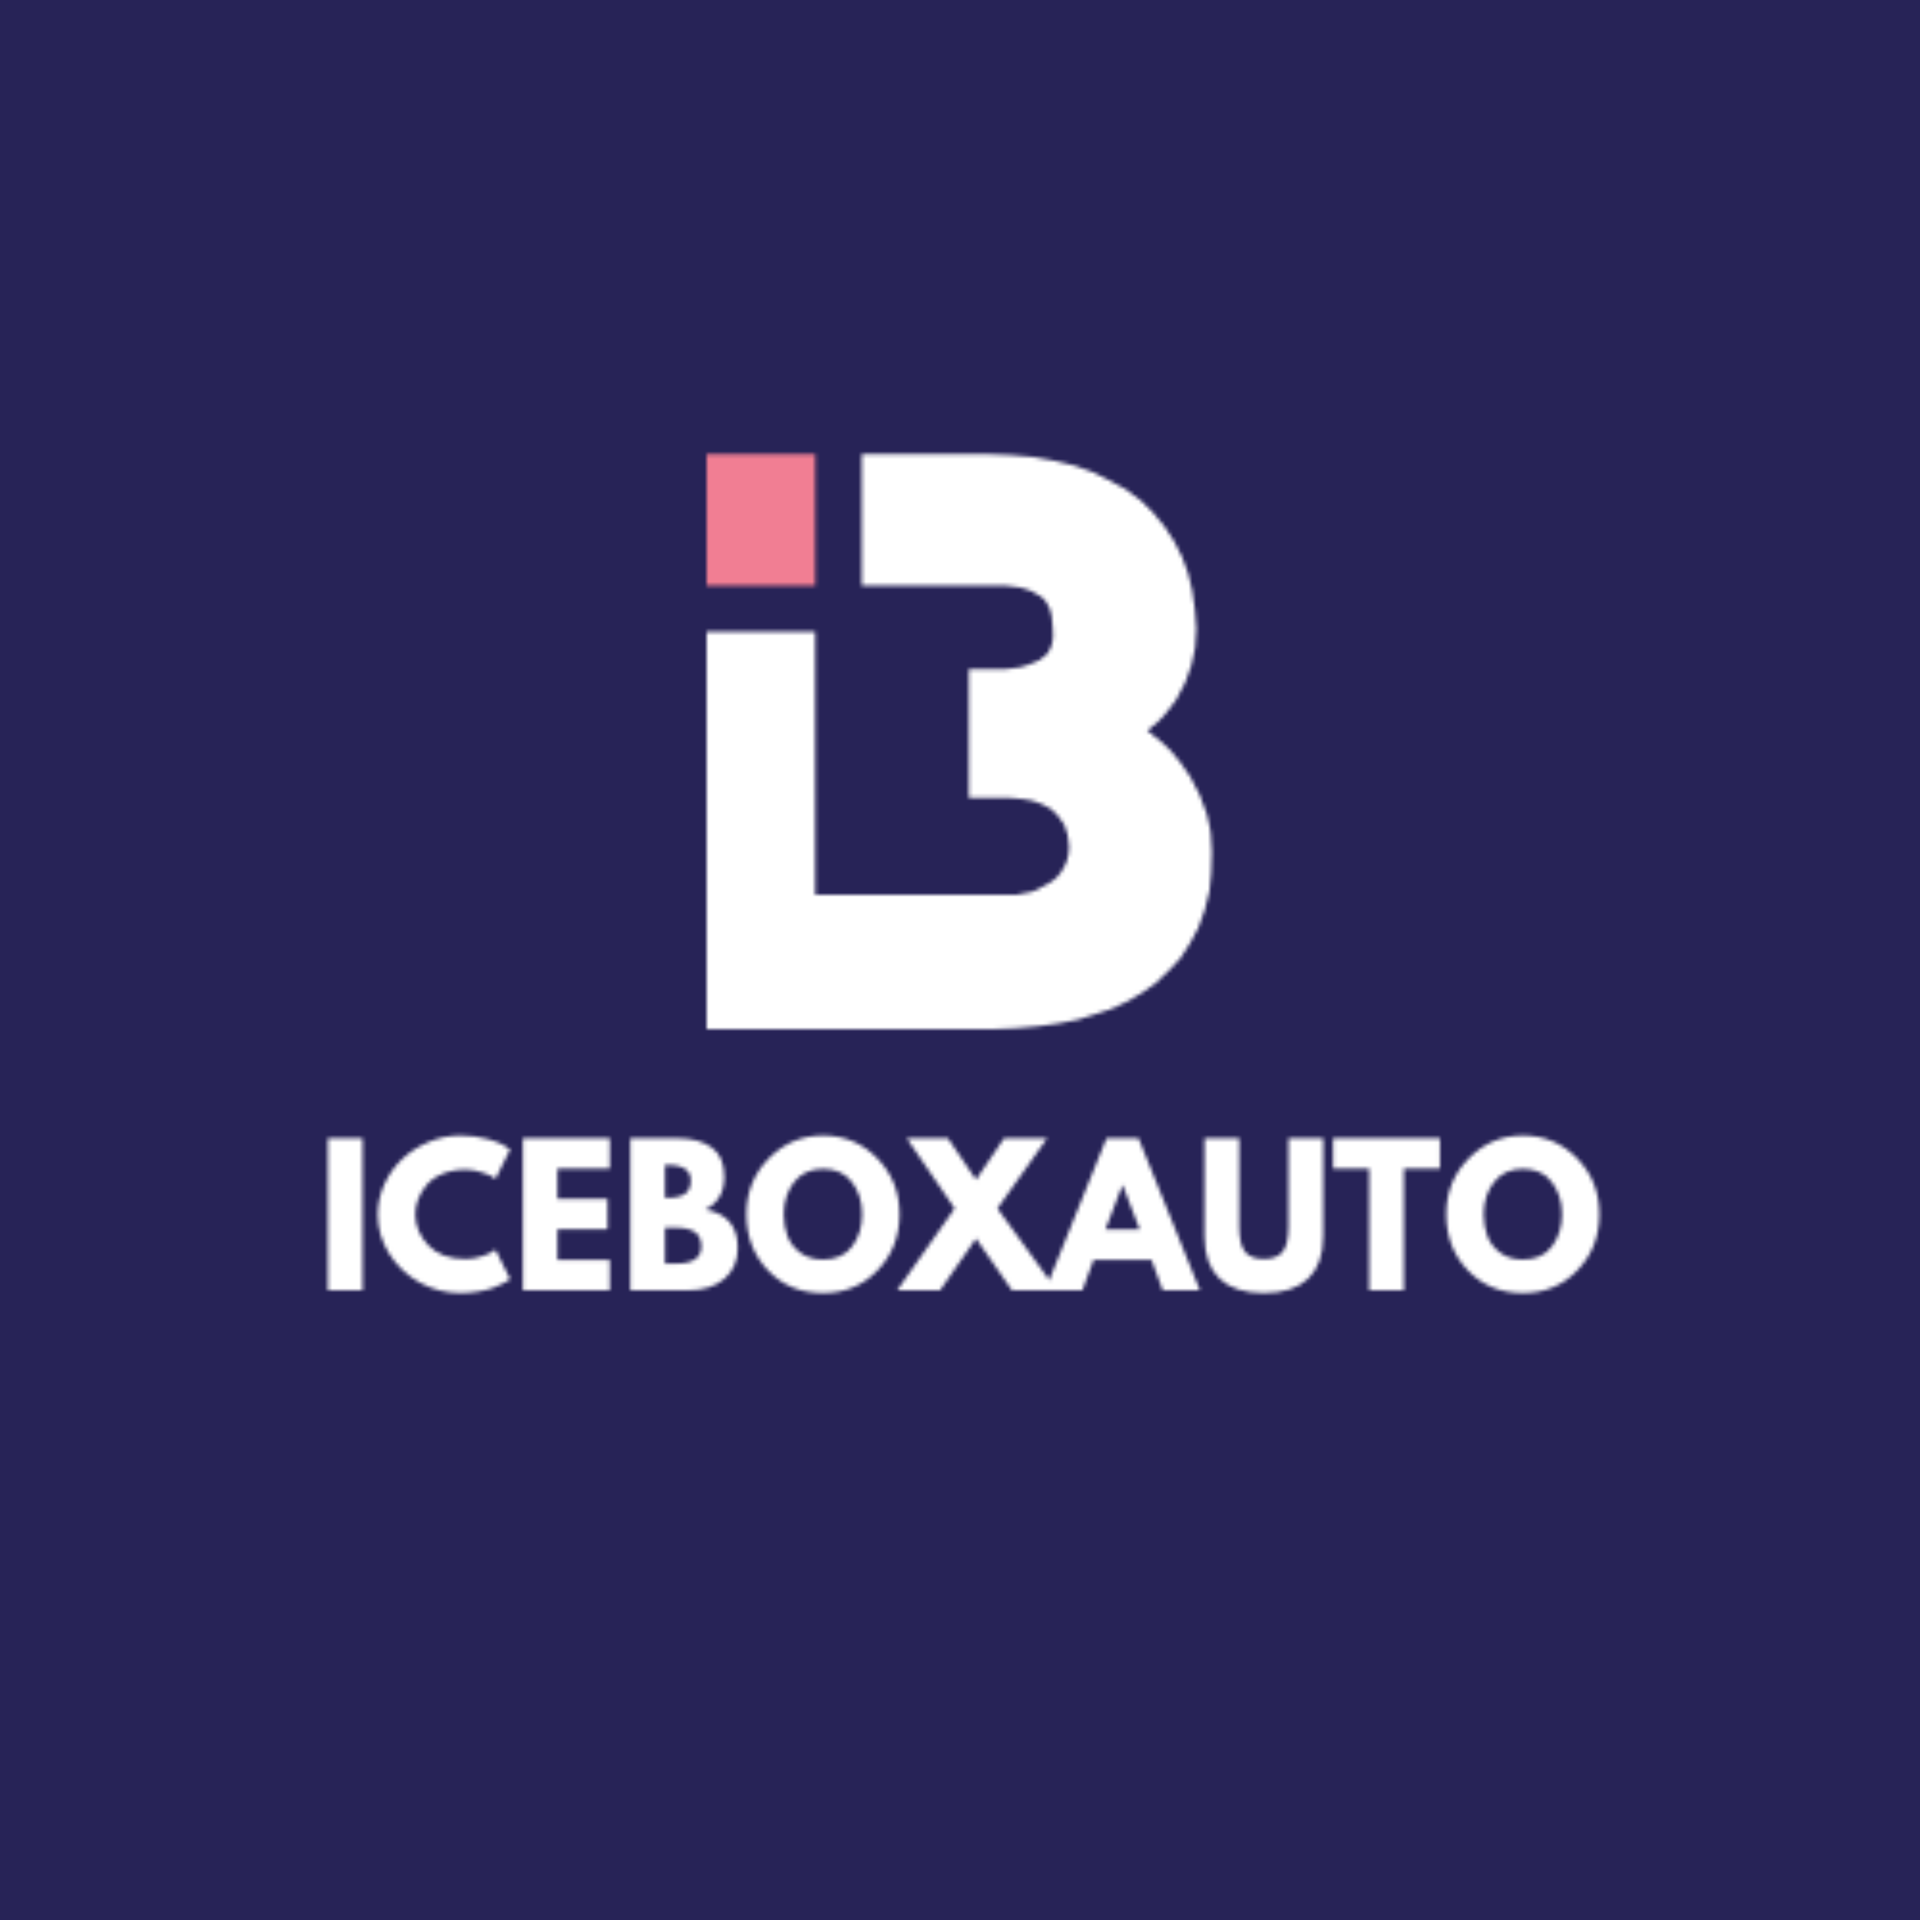 Iceboxauto